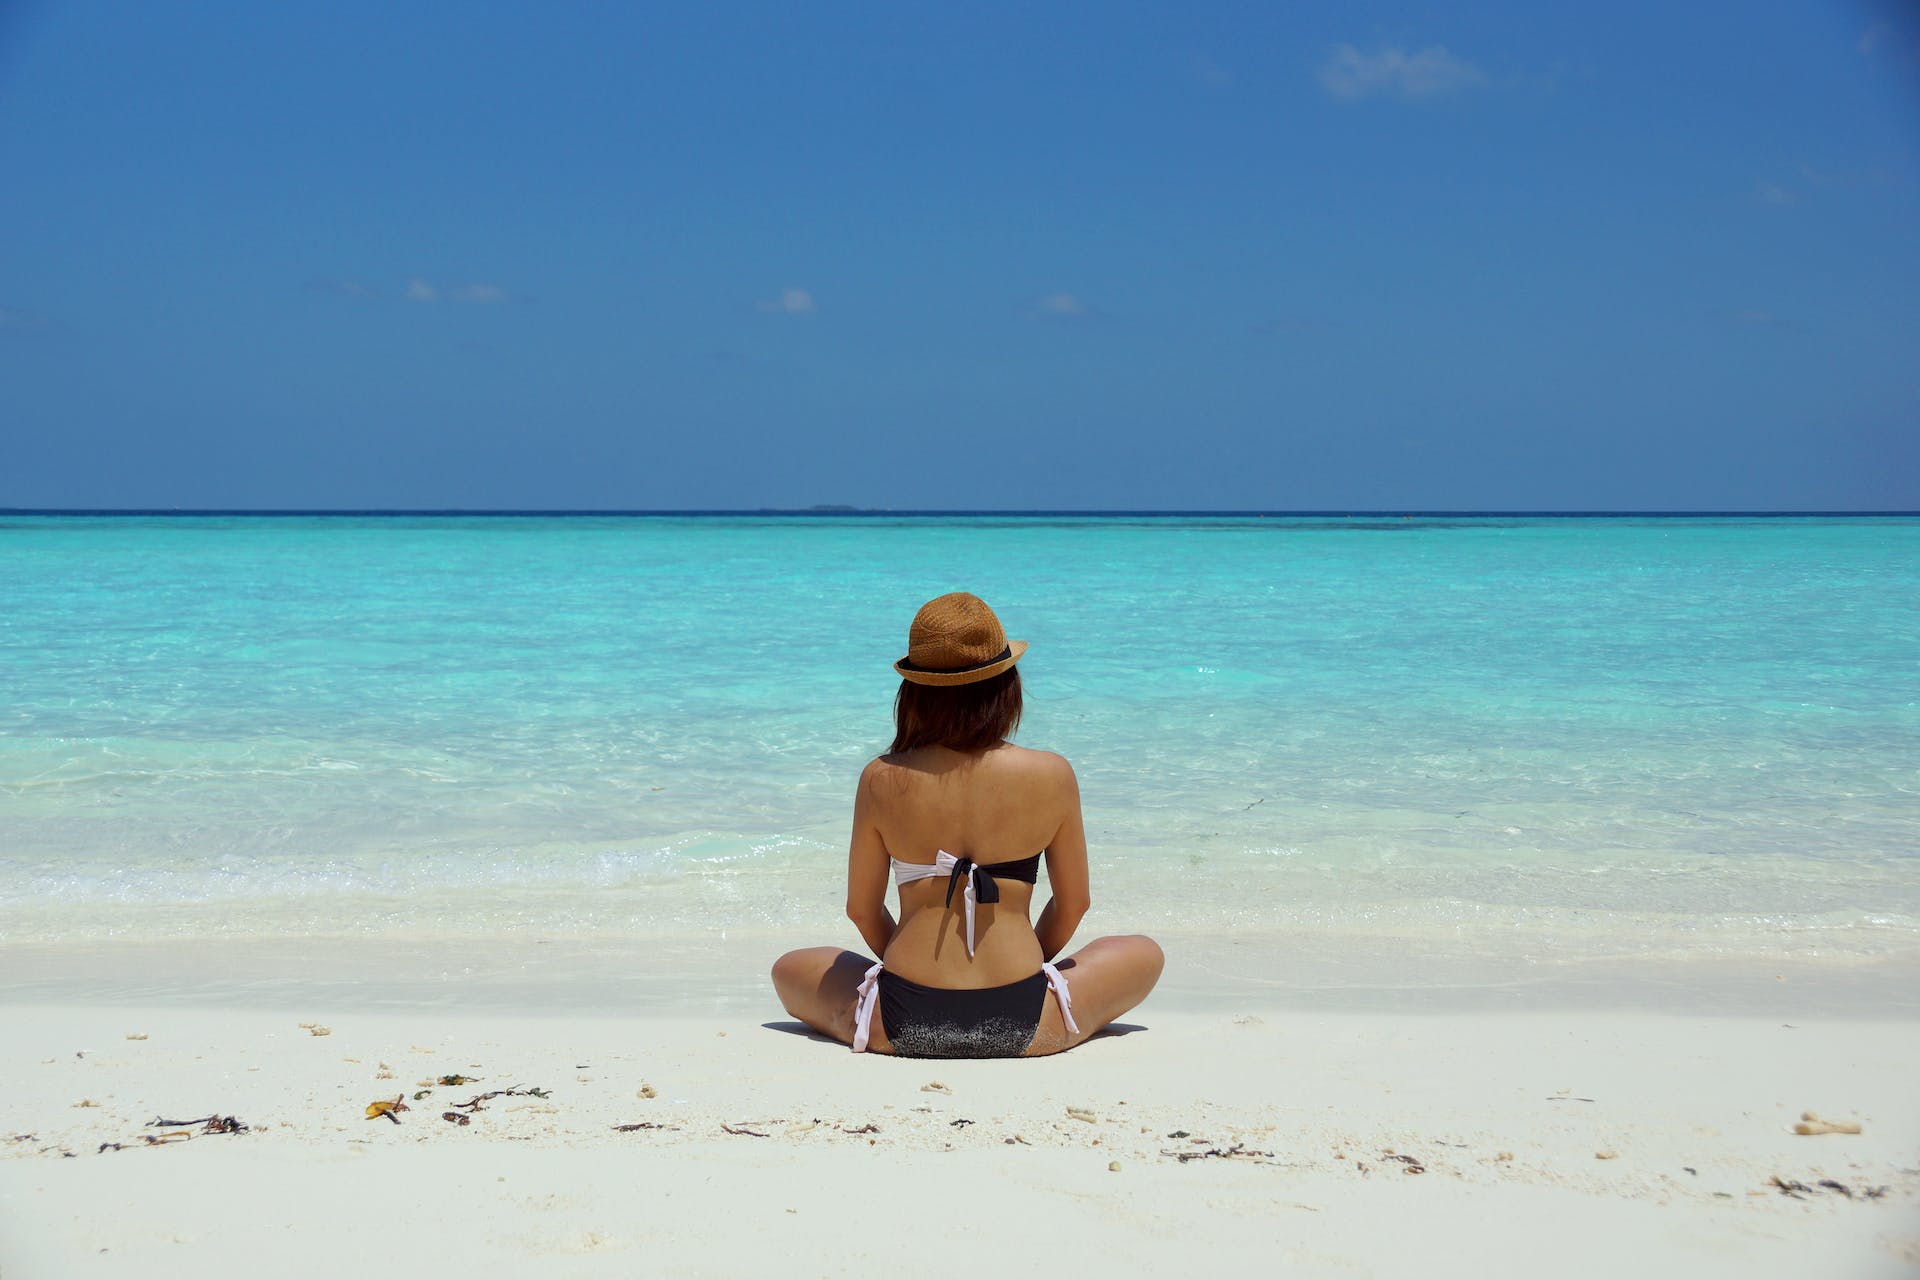 Woman sitting on the beach in bikini | Source: Pexels